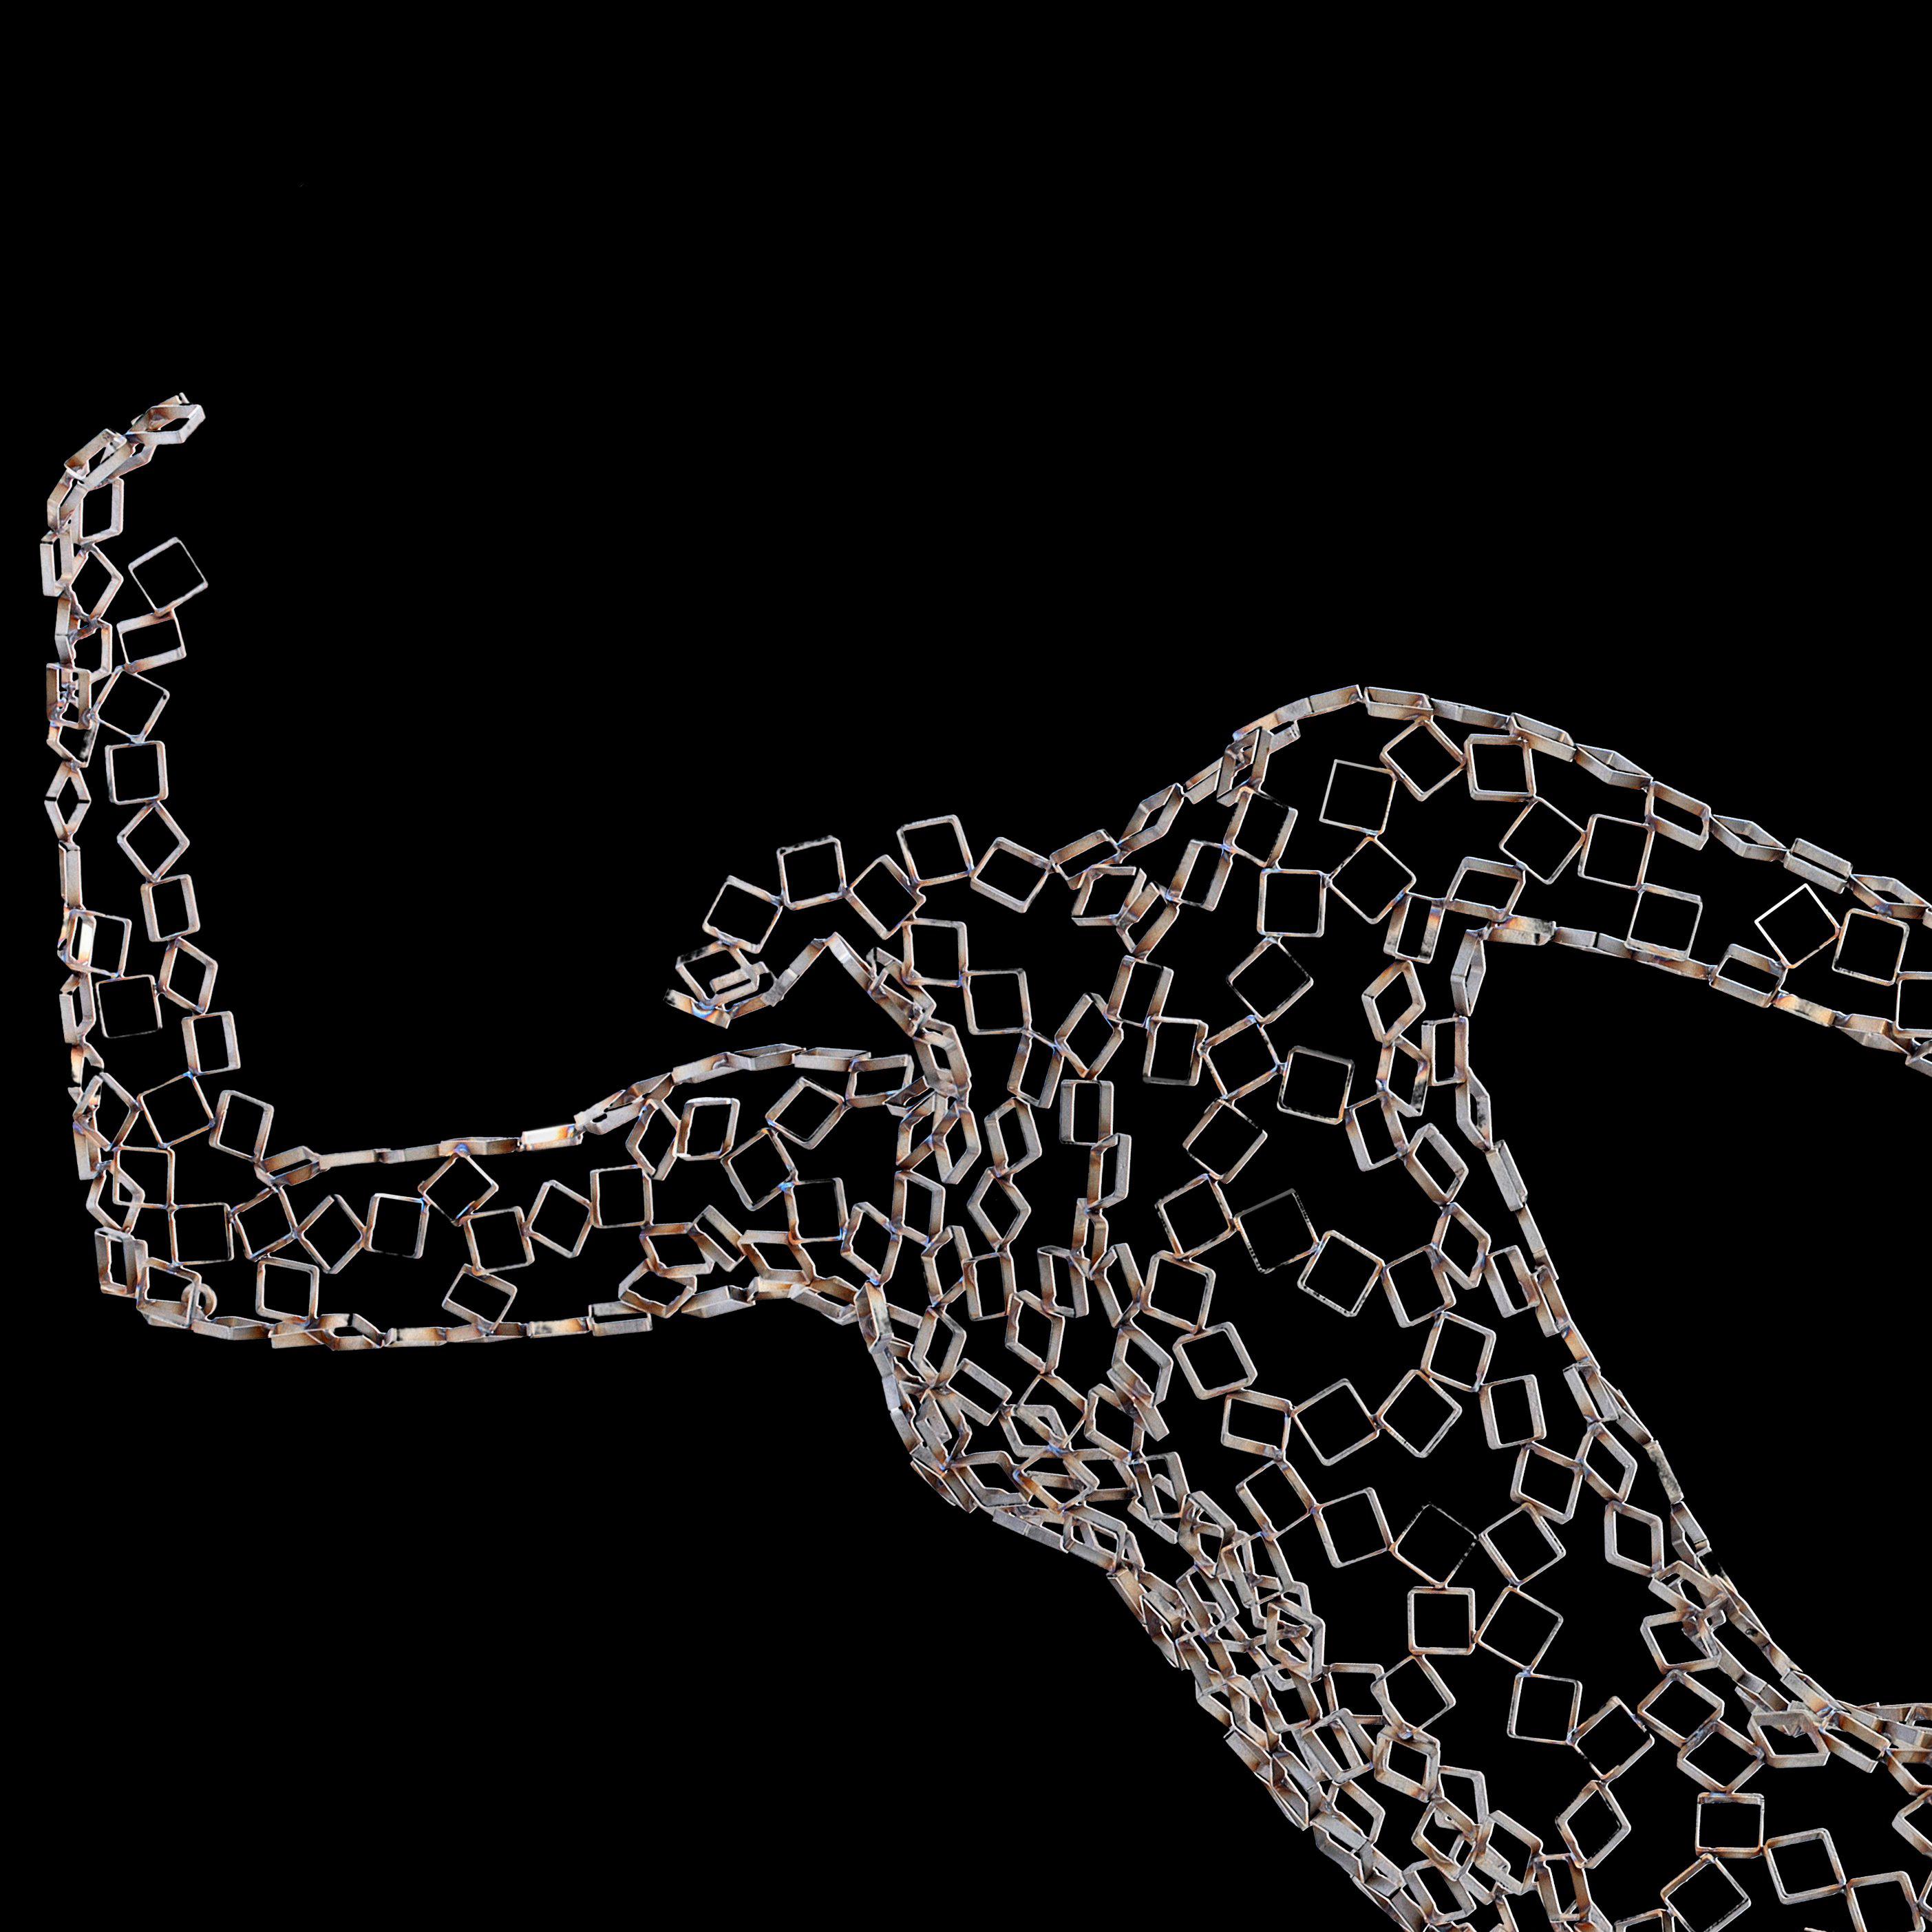 Dancer Ashley - Sculpture by Rainer Lagemann